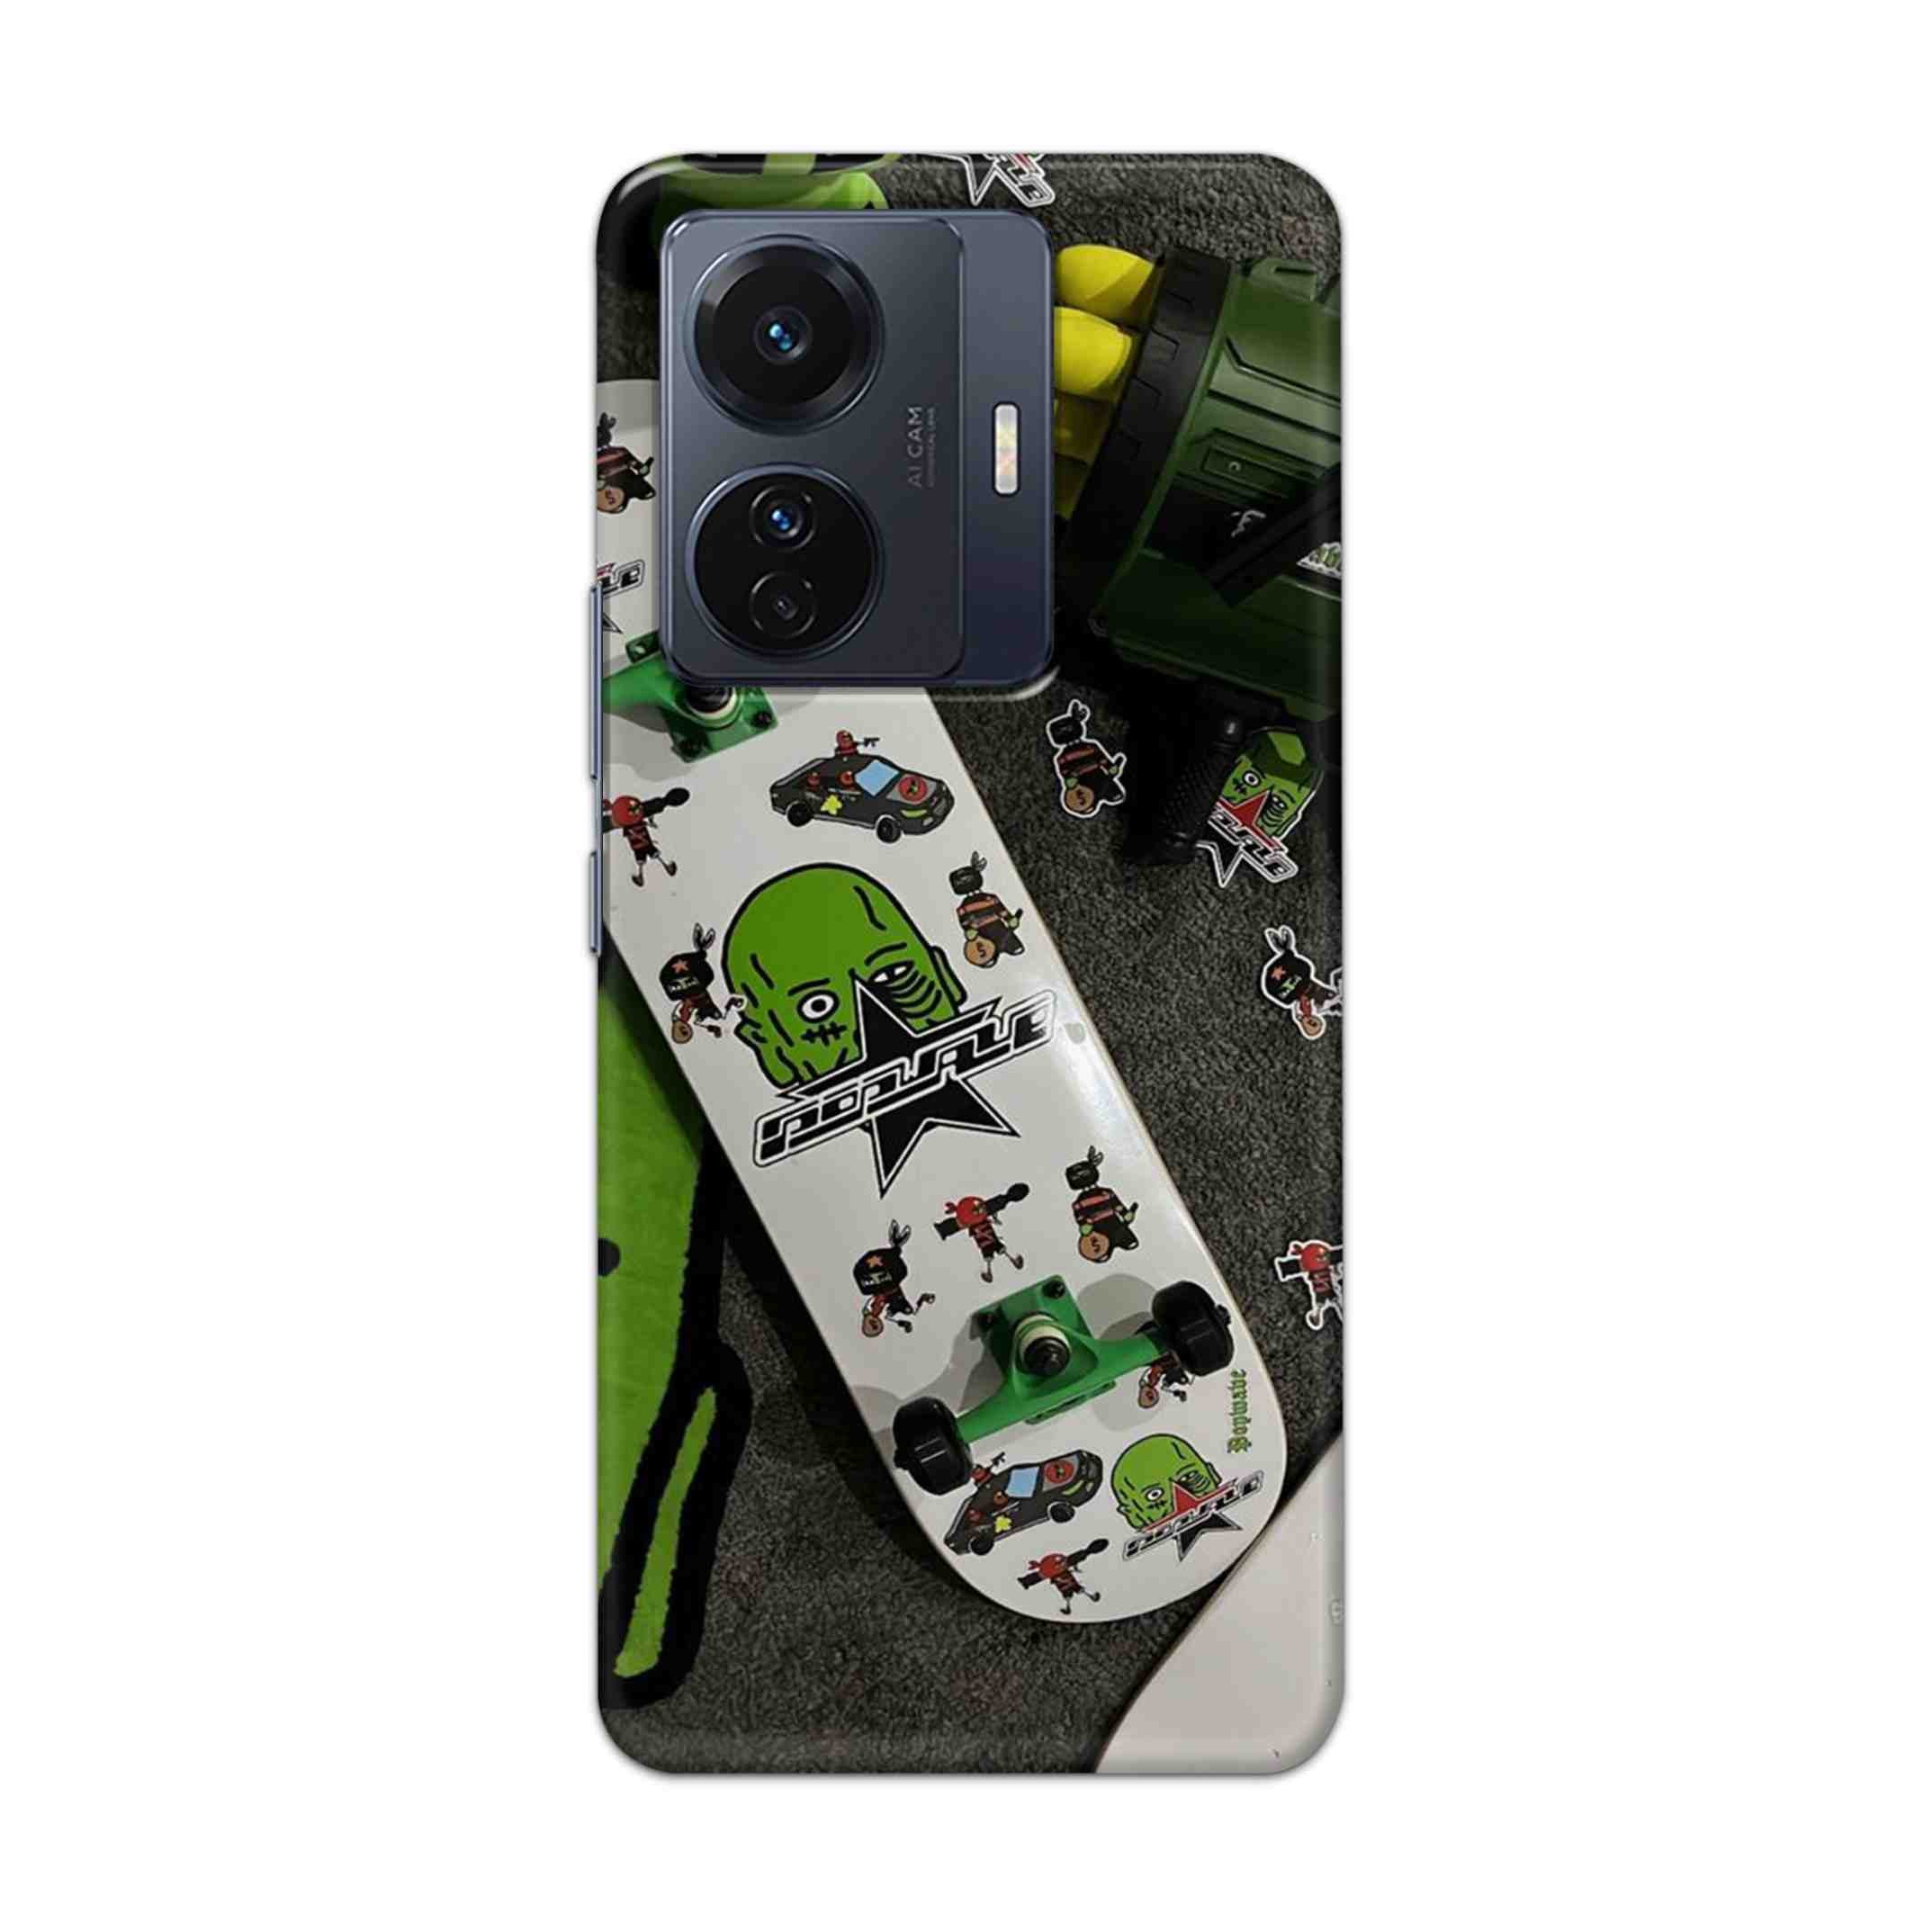 Buy Hulk Skateboard Hard Back Mobile Phone Case Cover For Vivo T1 Pro 5G Online